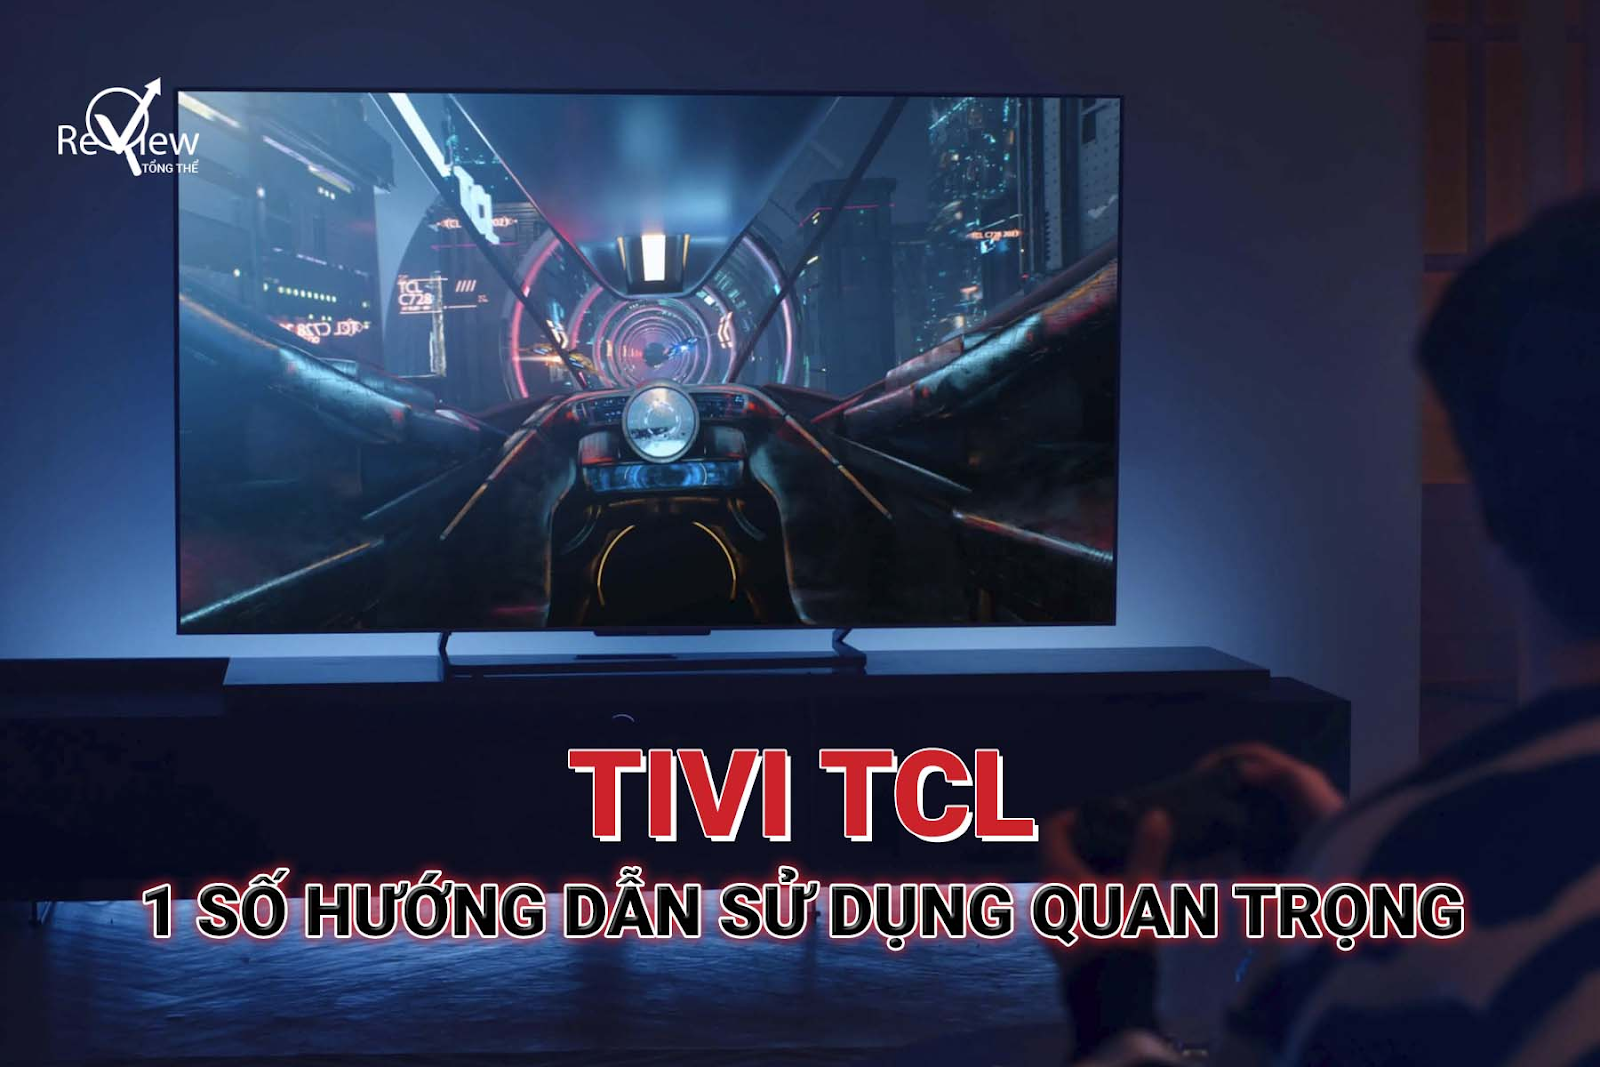 Tivi TCL – 1 Số hướng dẫn sử dụng quan trọng mà bạn cần biết đến